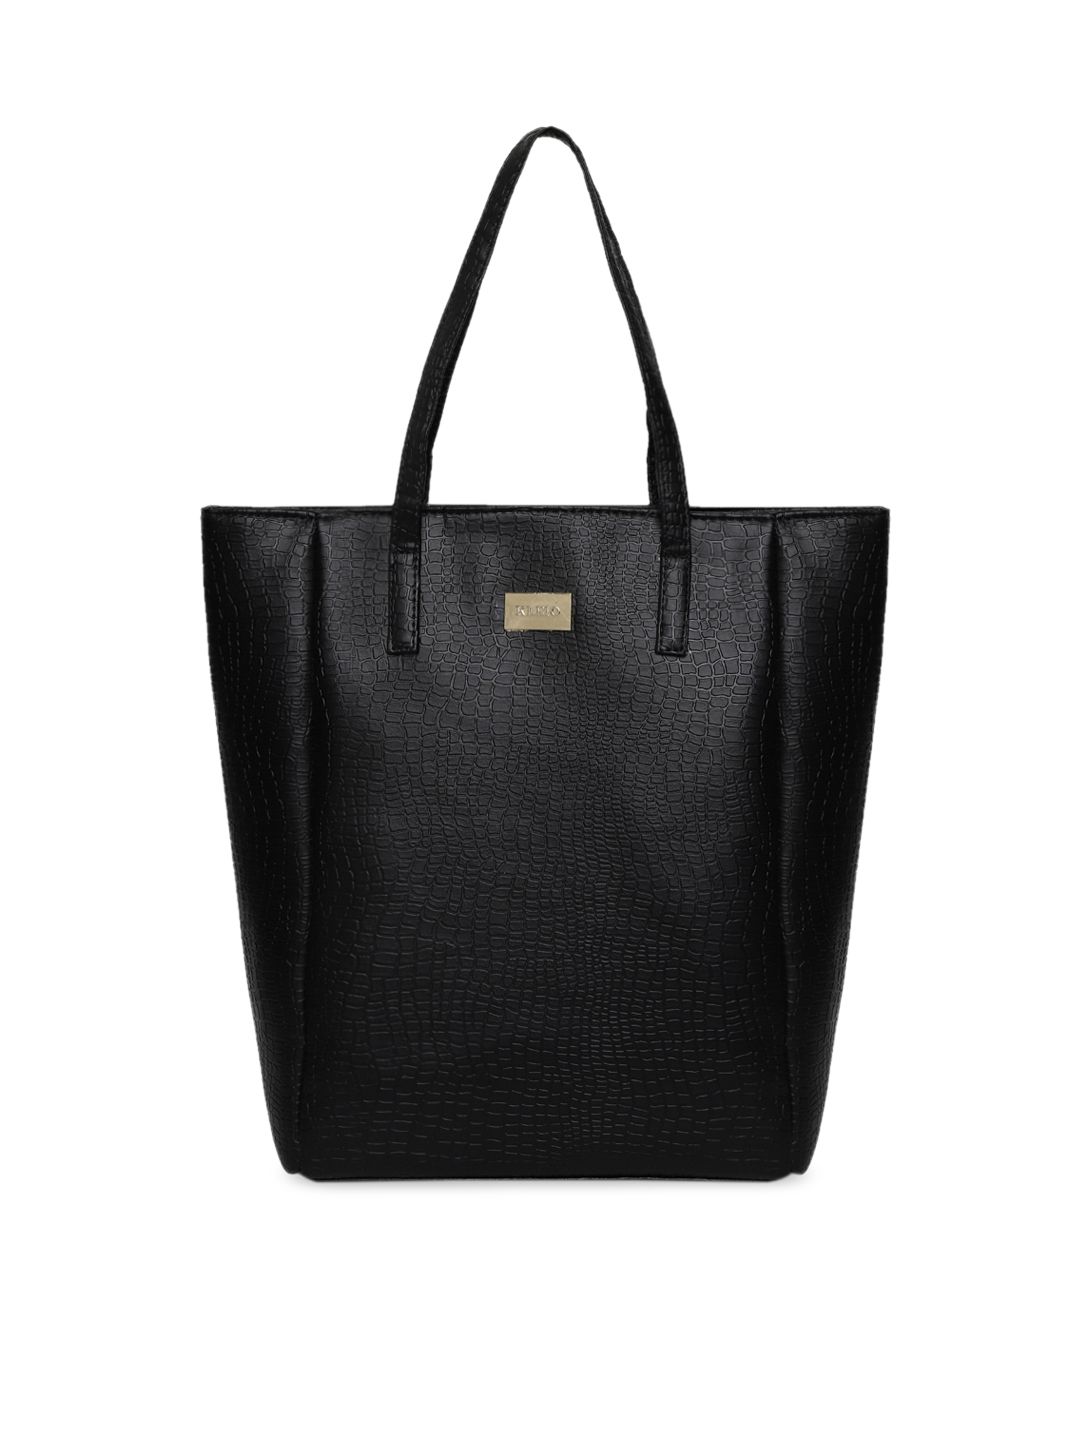 KLEIO Black Textured Shoulder Bag Price in India